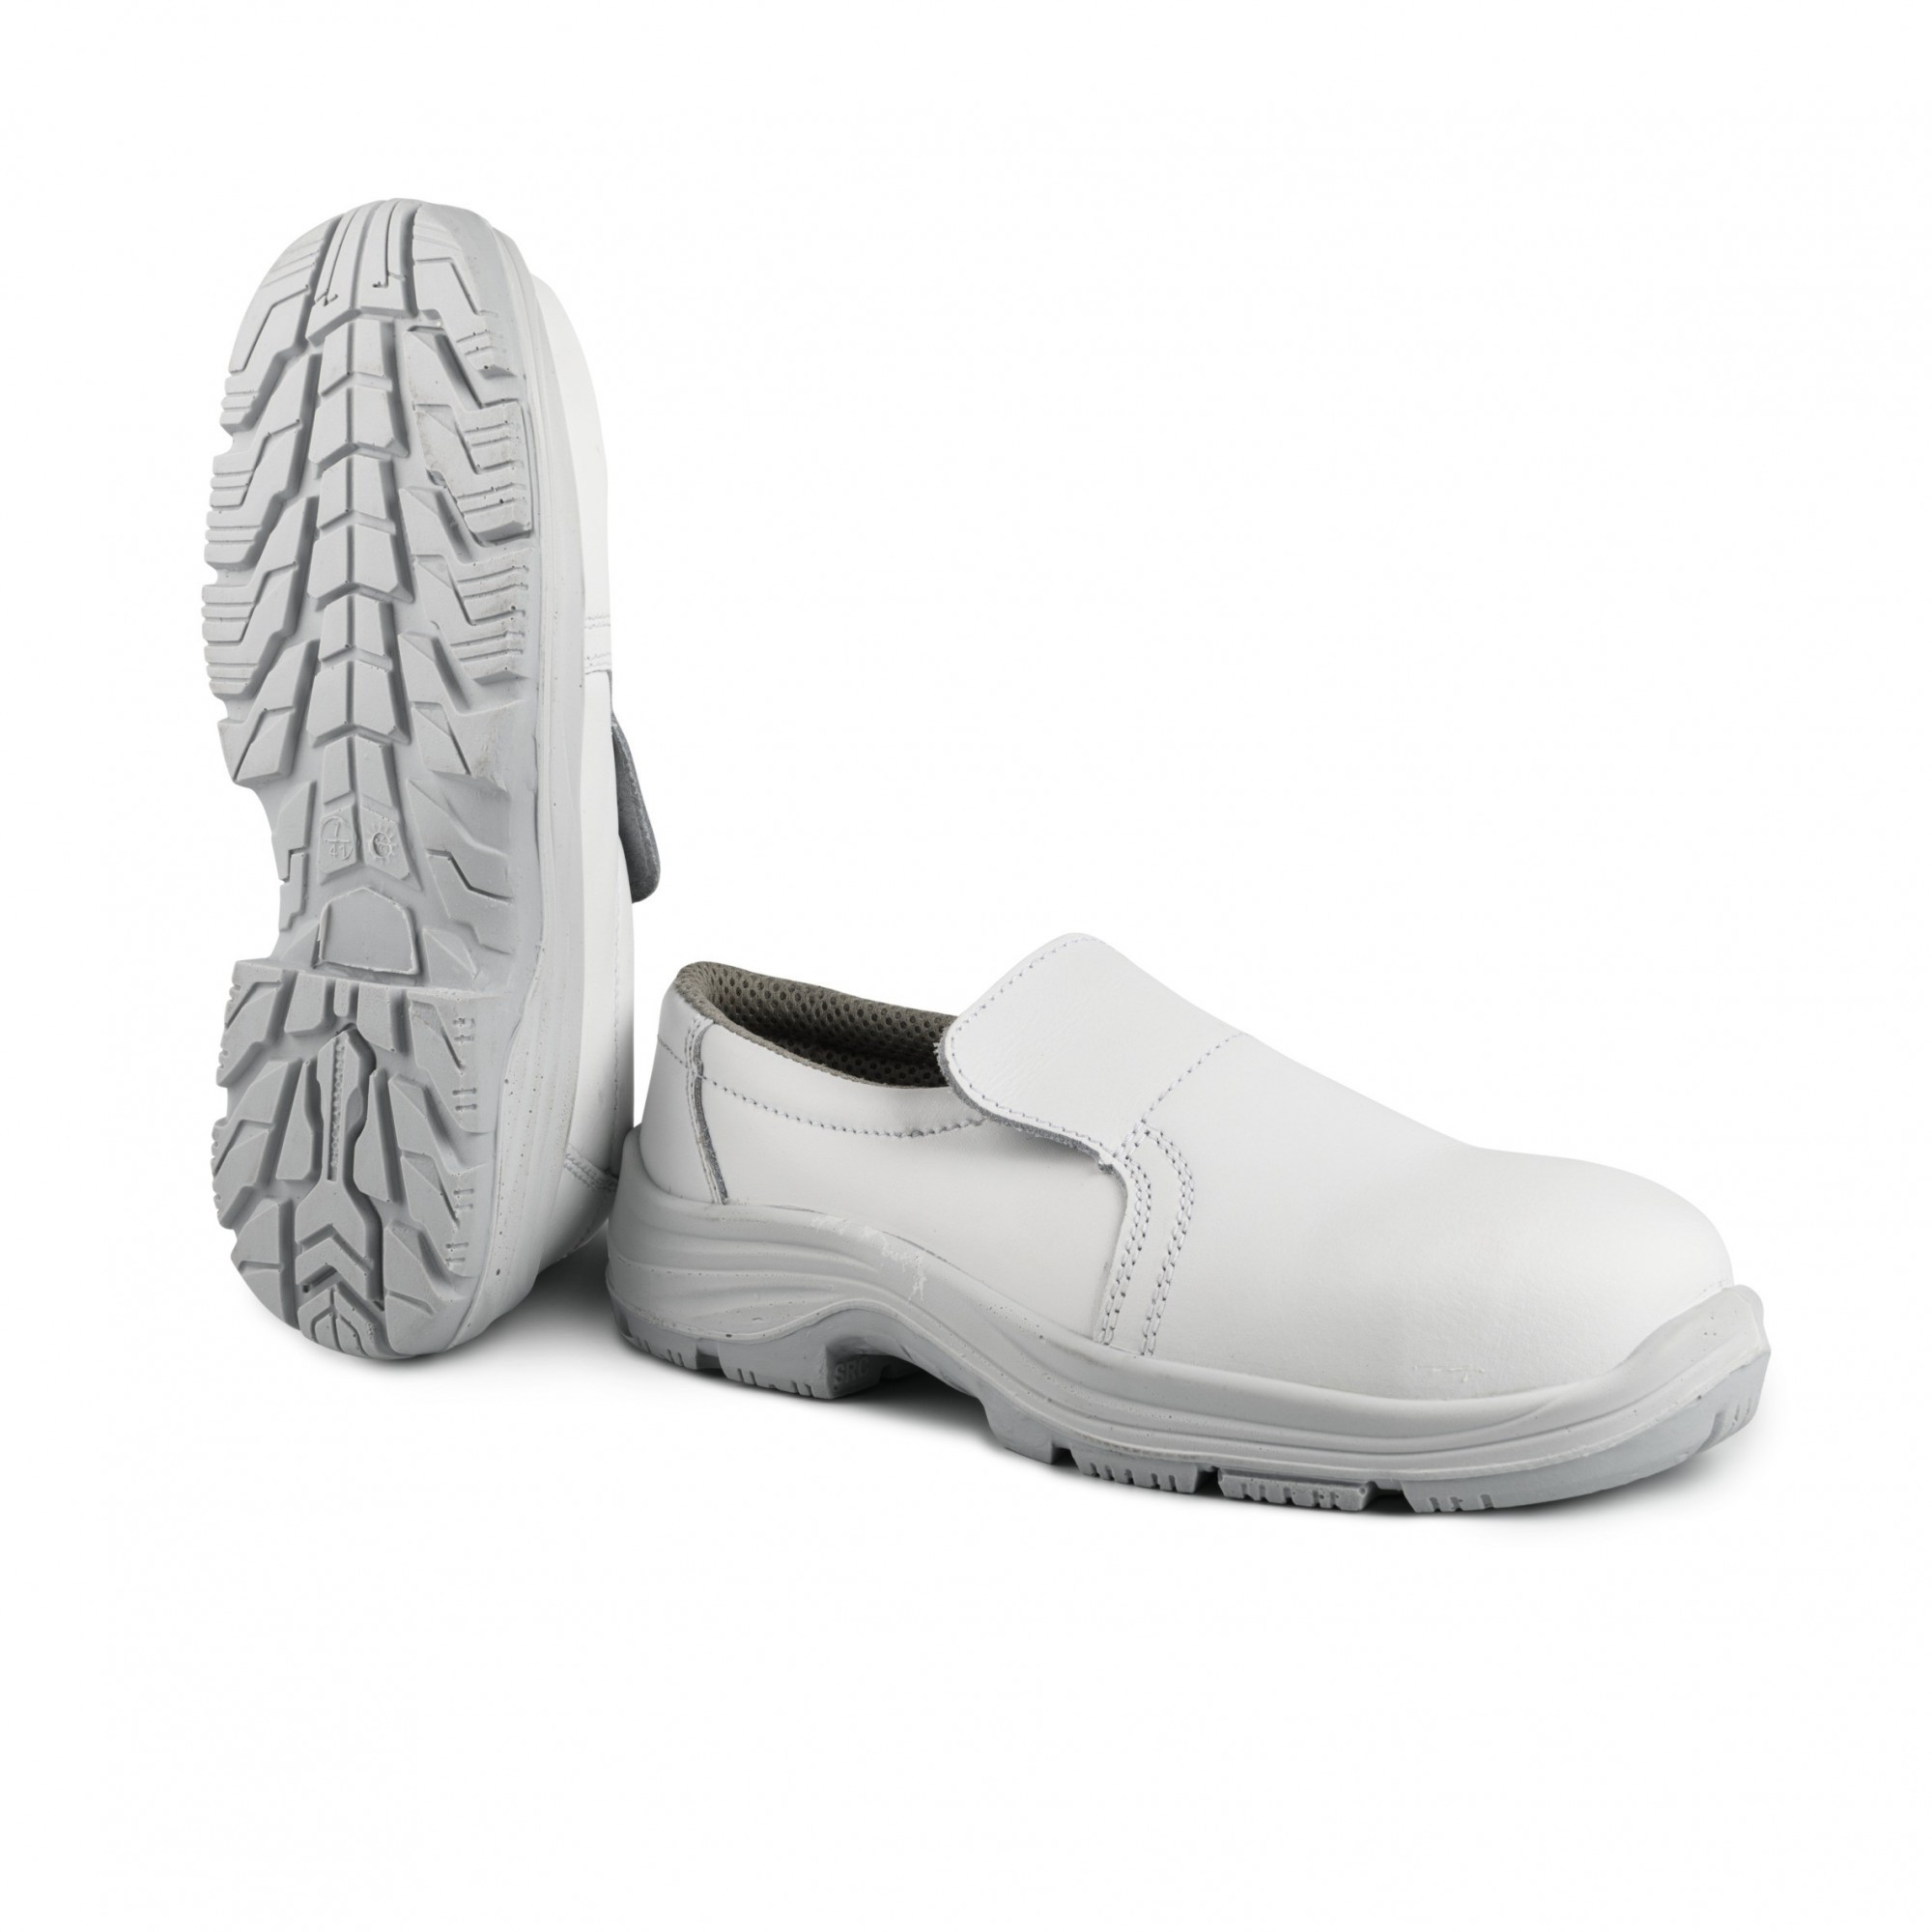 Chaussure de sécurité basse blanche Husky S2 - SECURITOP